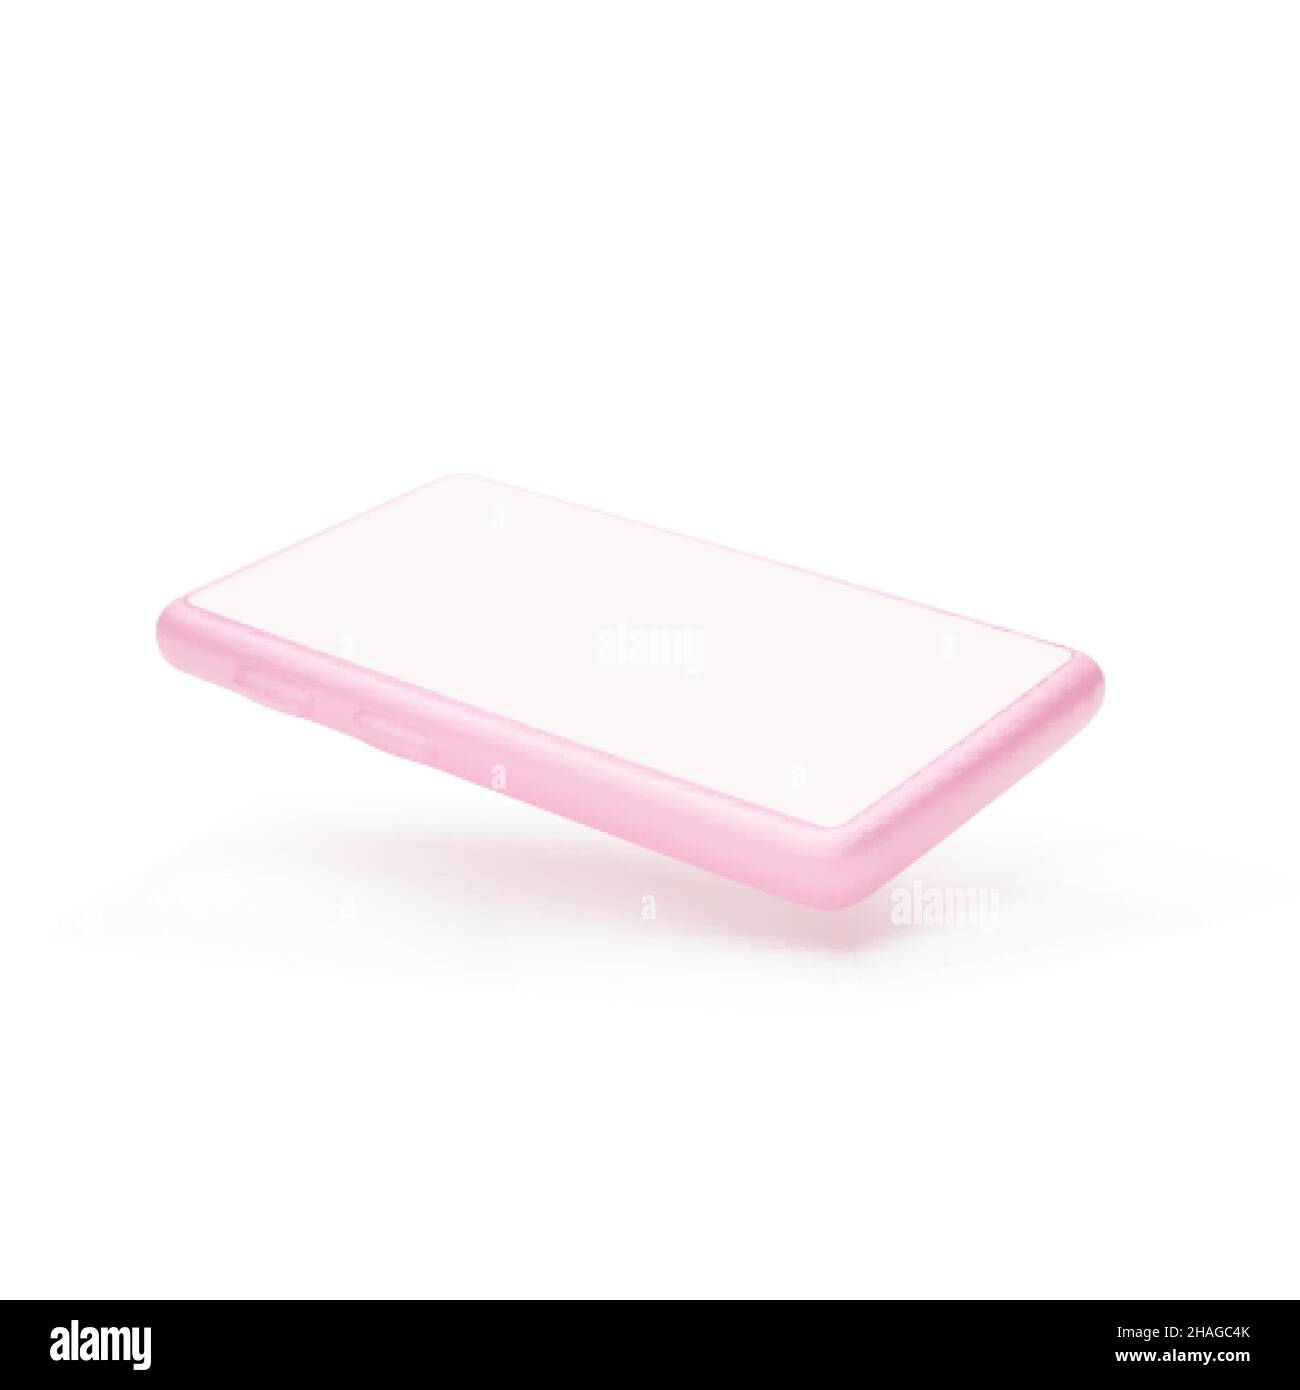 Cellulare mock-up. 3d colore rosa telefono. Smartphone con schermo vuoto isolato su sfondo bianco. Illustrazione vettoriale Illustrazione Vettoriale